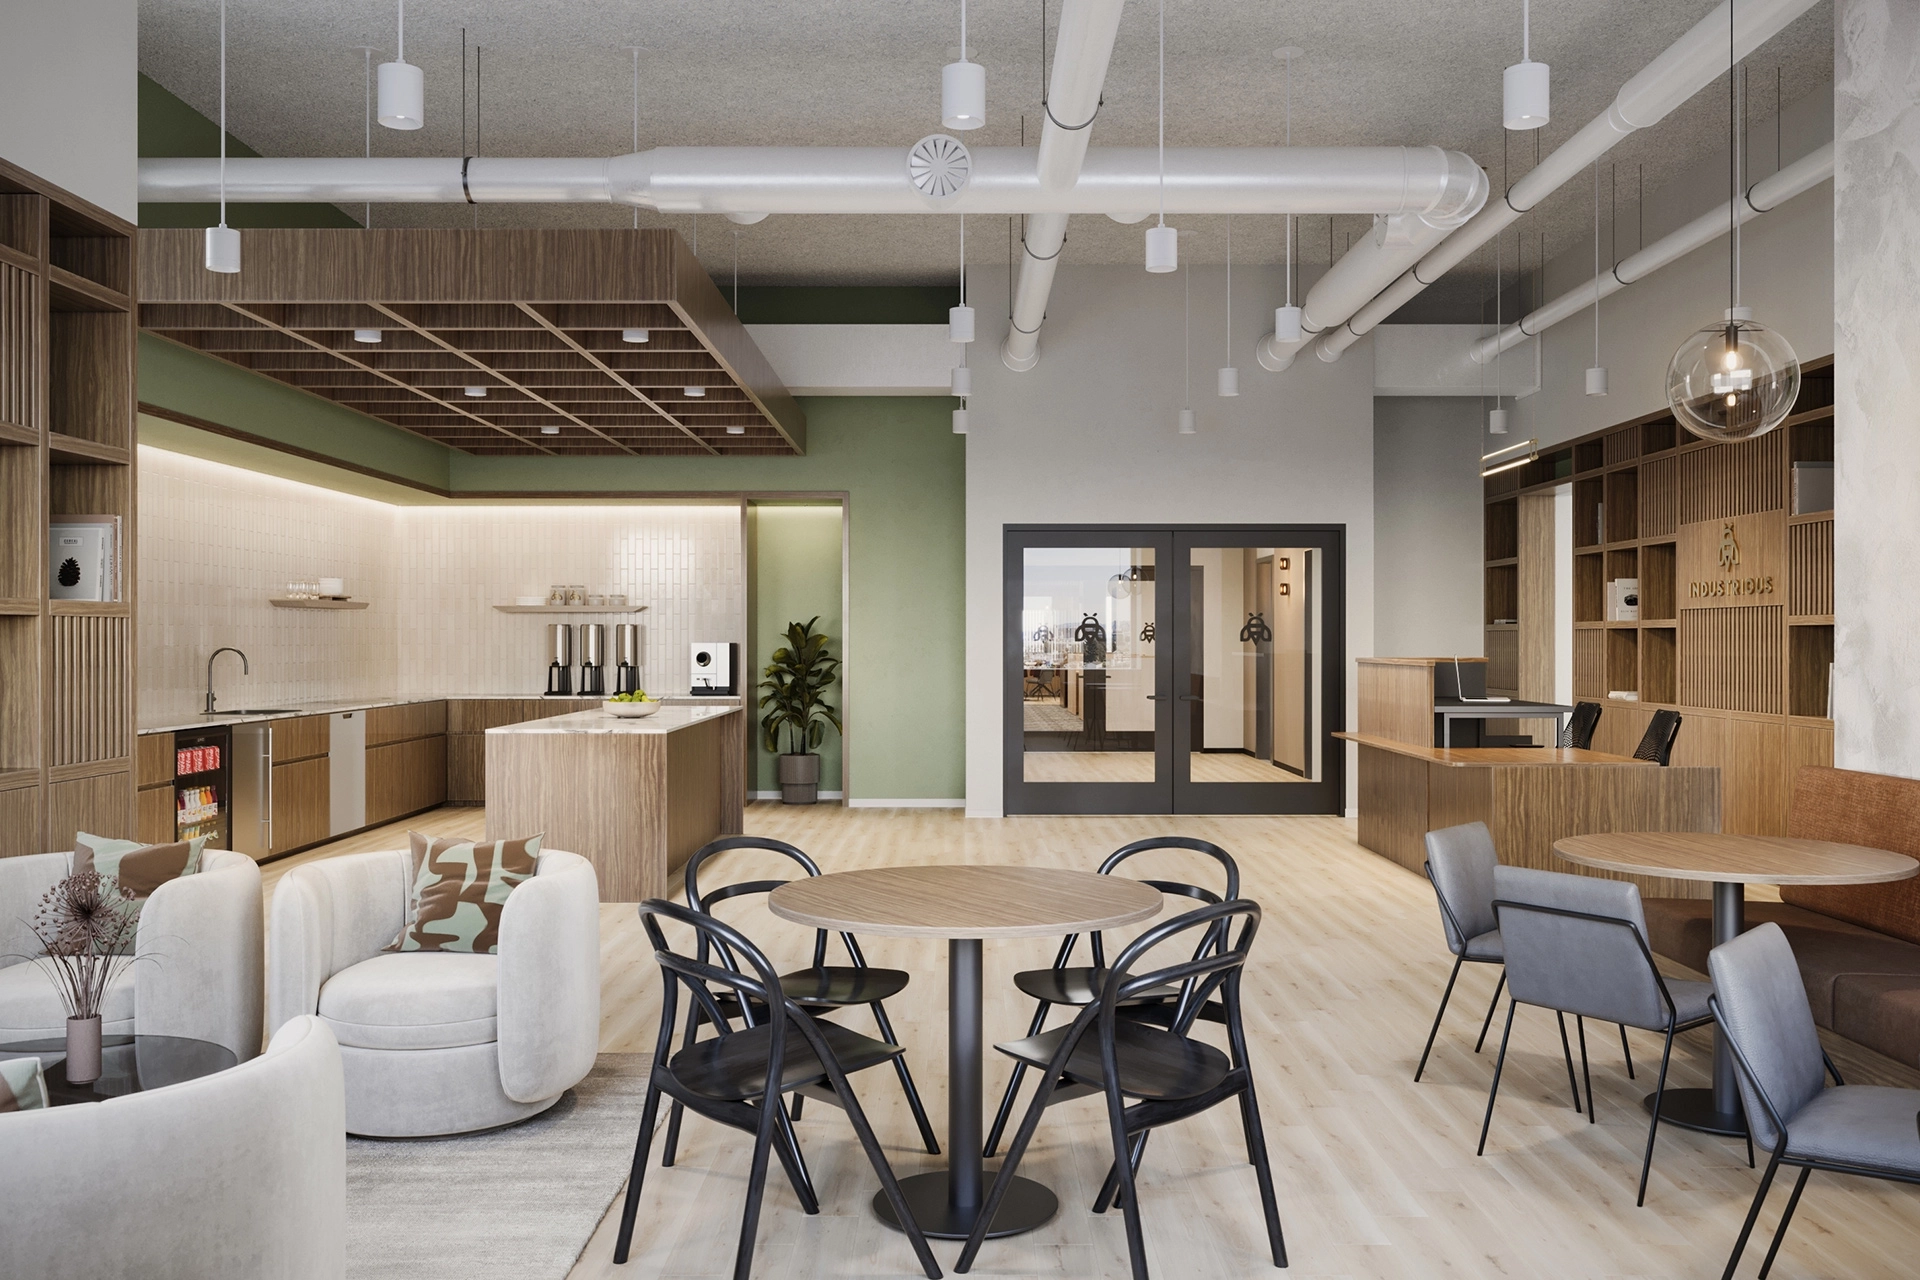 Moderne kantoorwerkruimte met gemengde zitplaatsen, keukengedeelte en zichtbare plafondbuizen. Neutraal en groen kleurenpalet met natuurlijke houtaccenten.